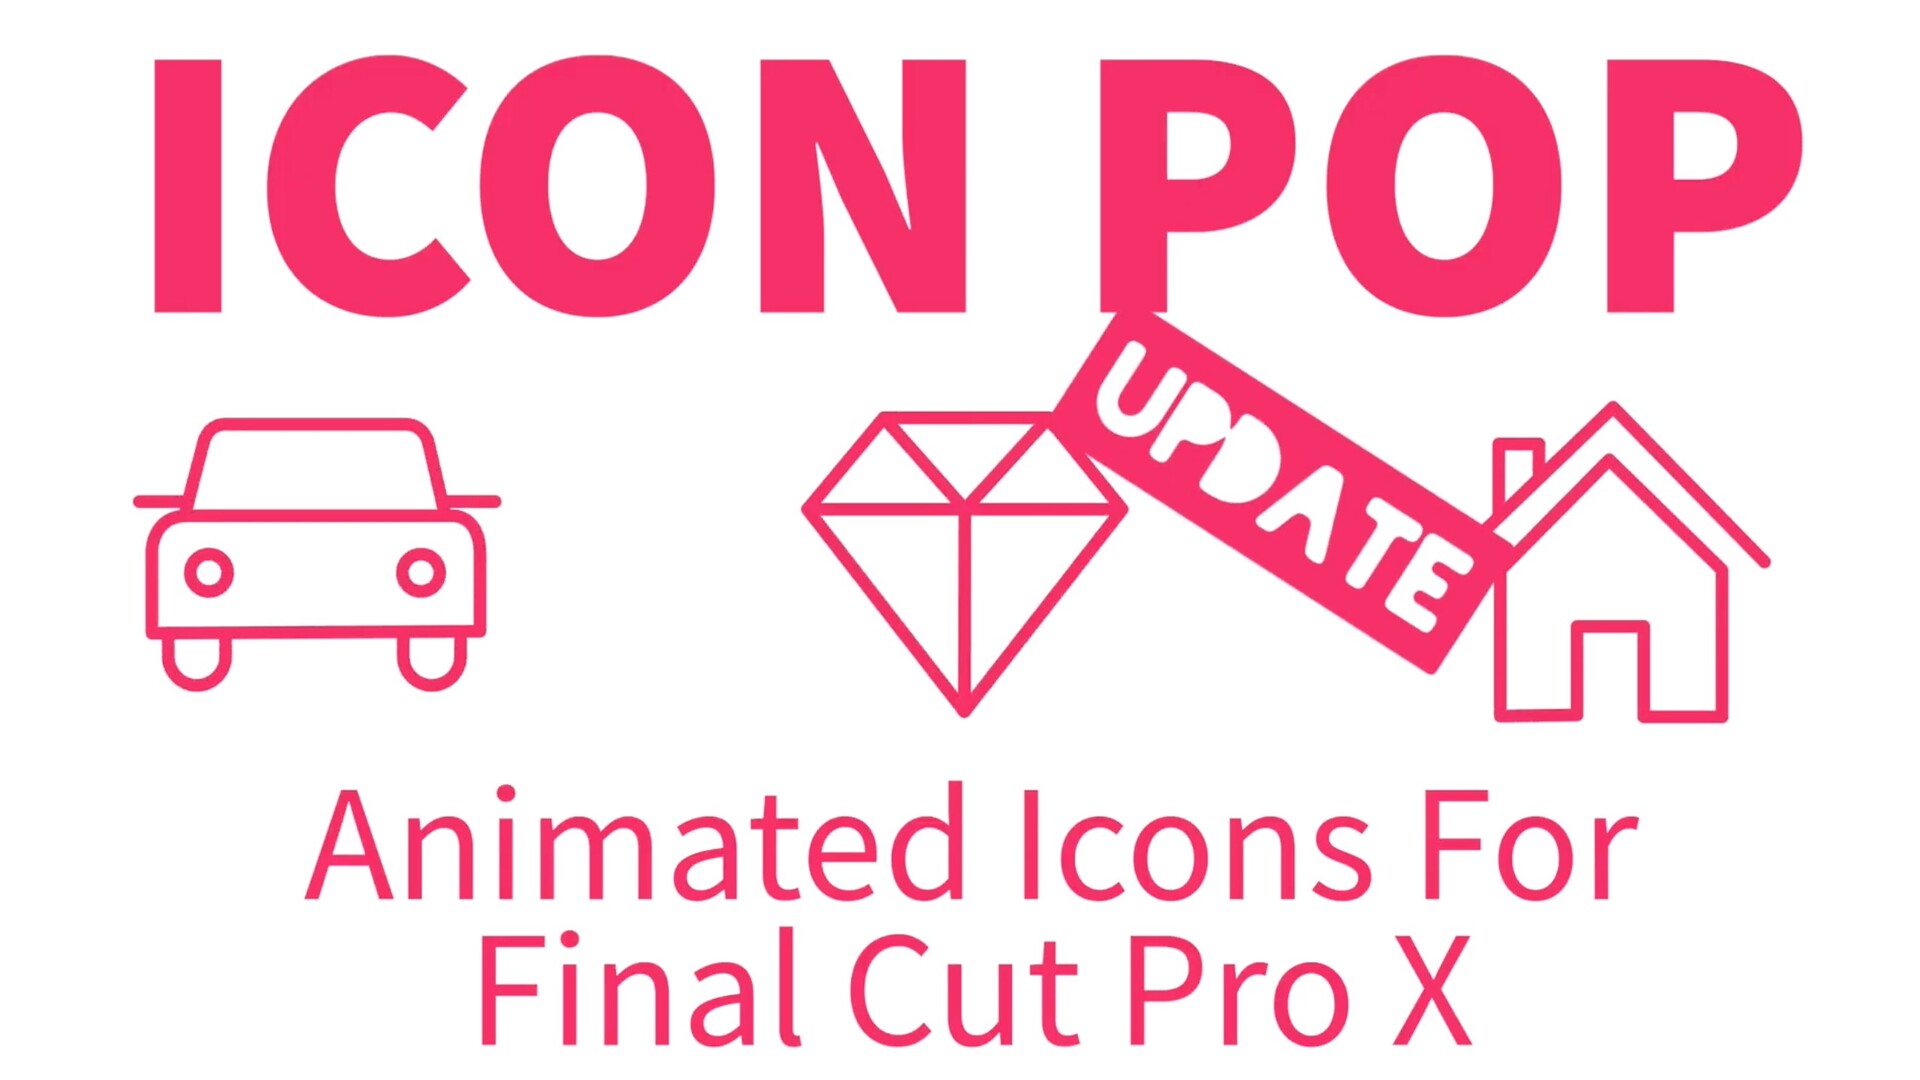 FCPX插件:Icon Pop(100个流行图标动画 )